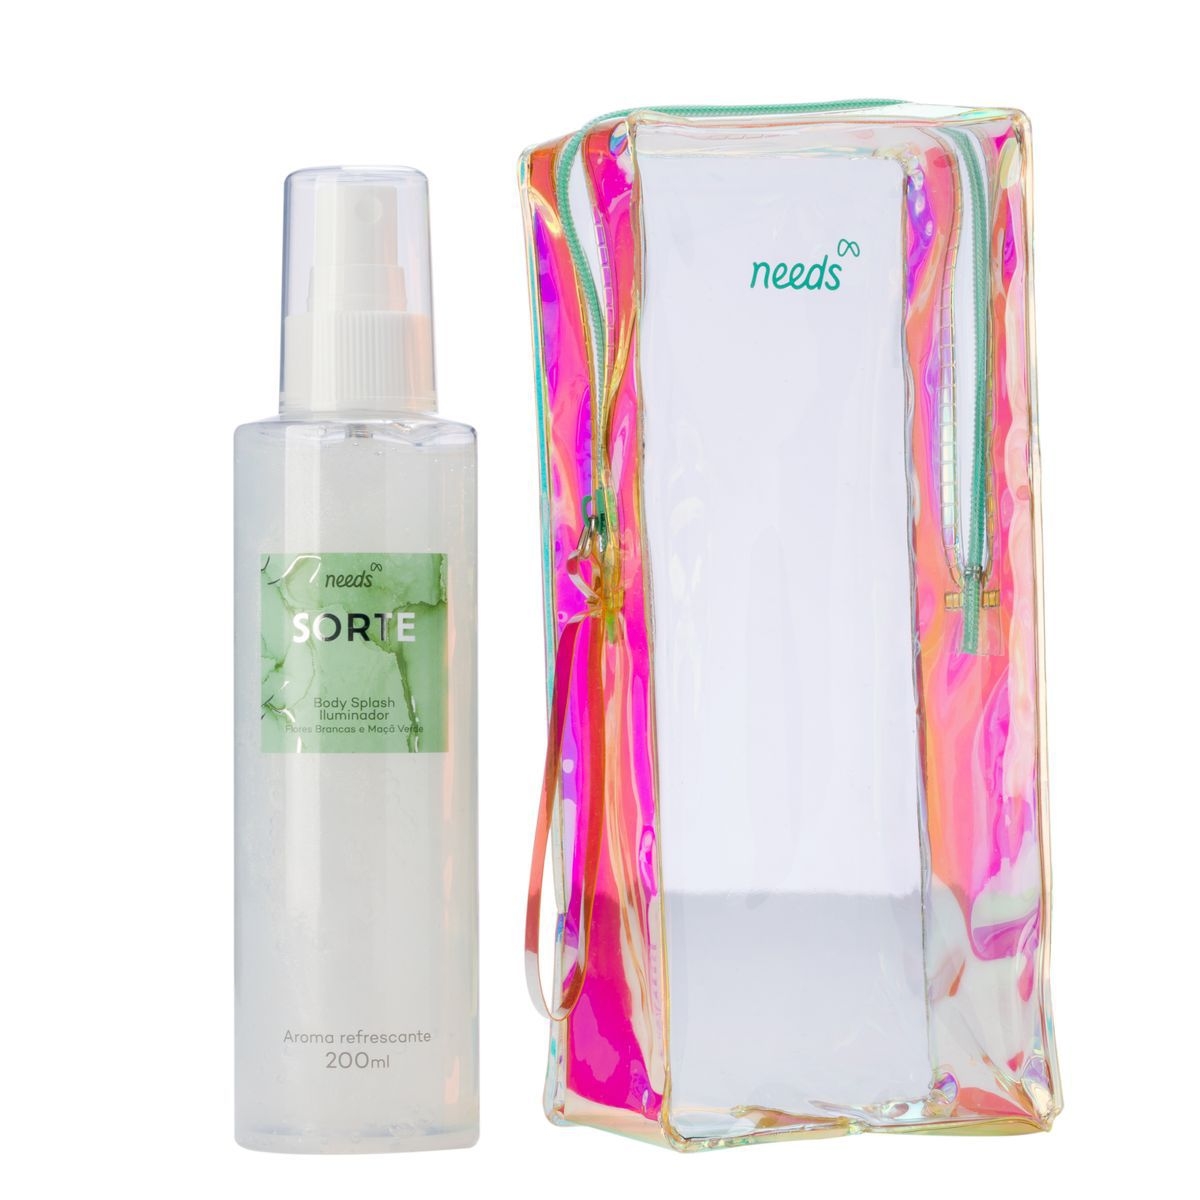 Body Splash Iluminador Needs Sorte Flores Brancas e Maçã Verde 200ml + Necessaire 200ml + Necessaire